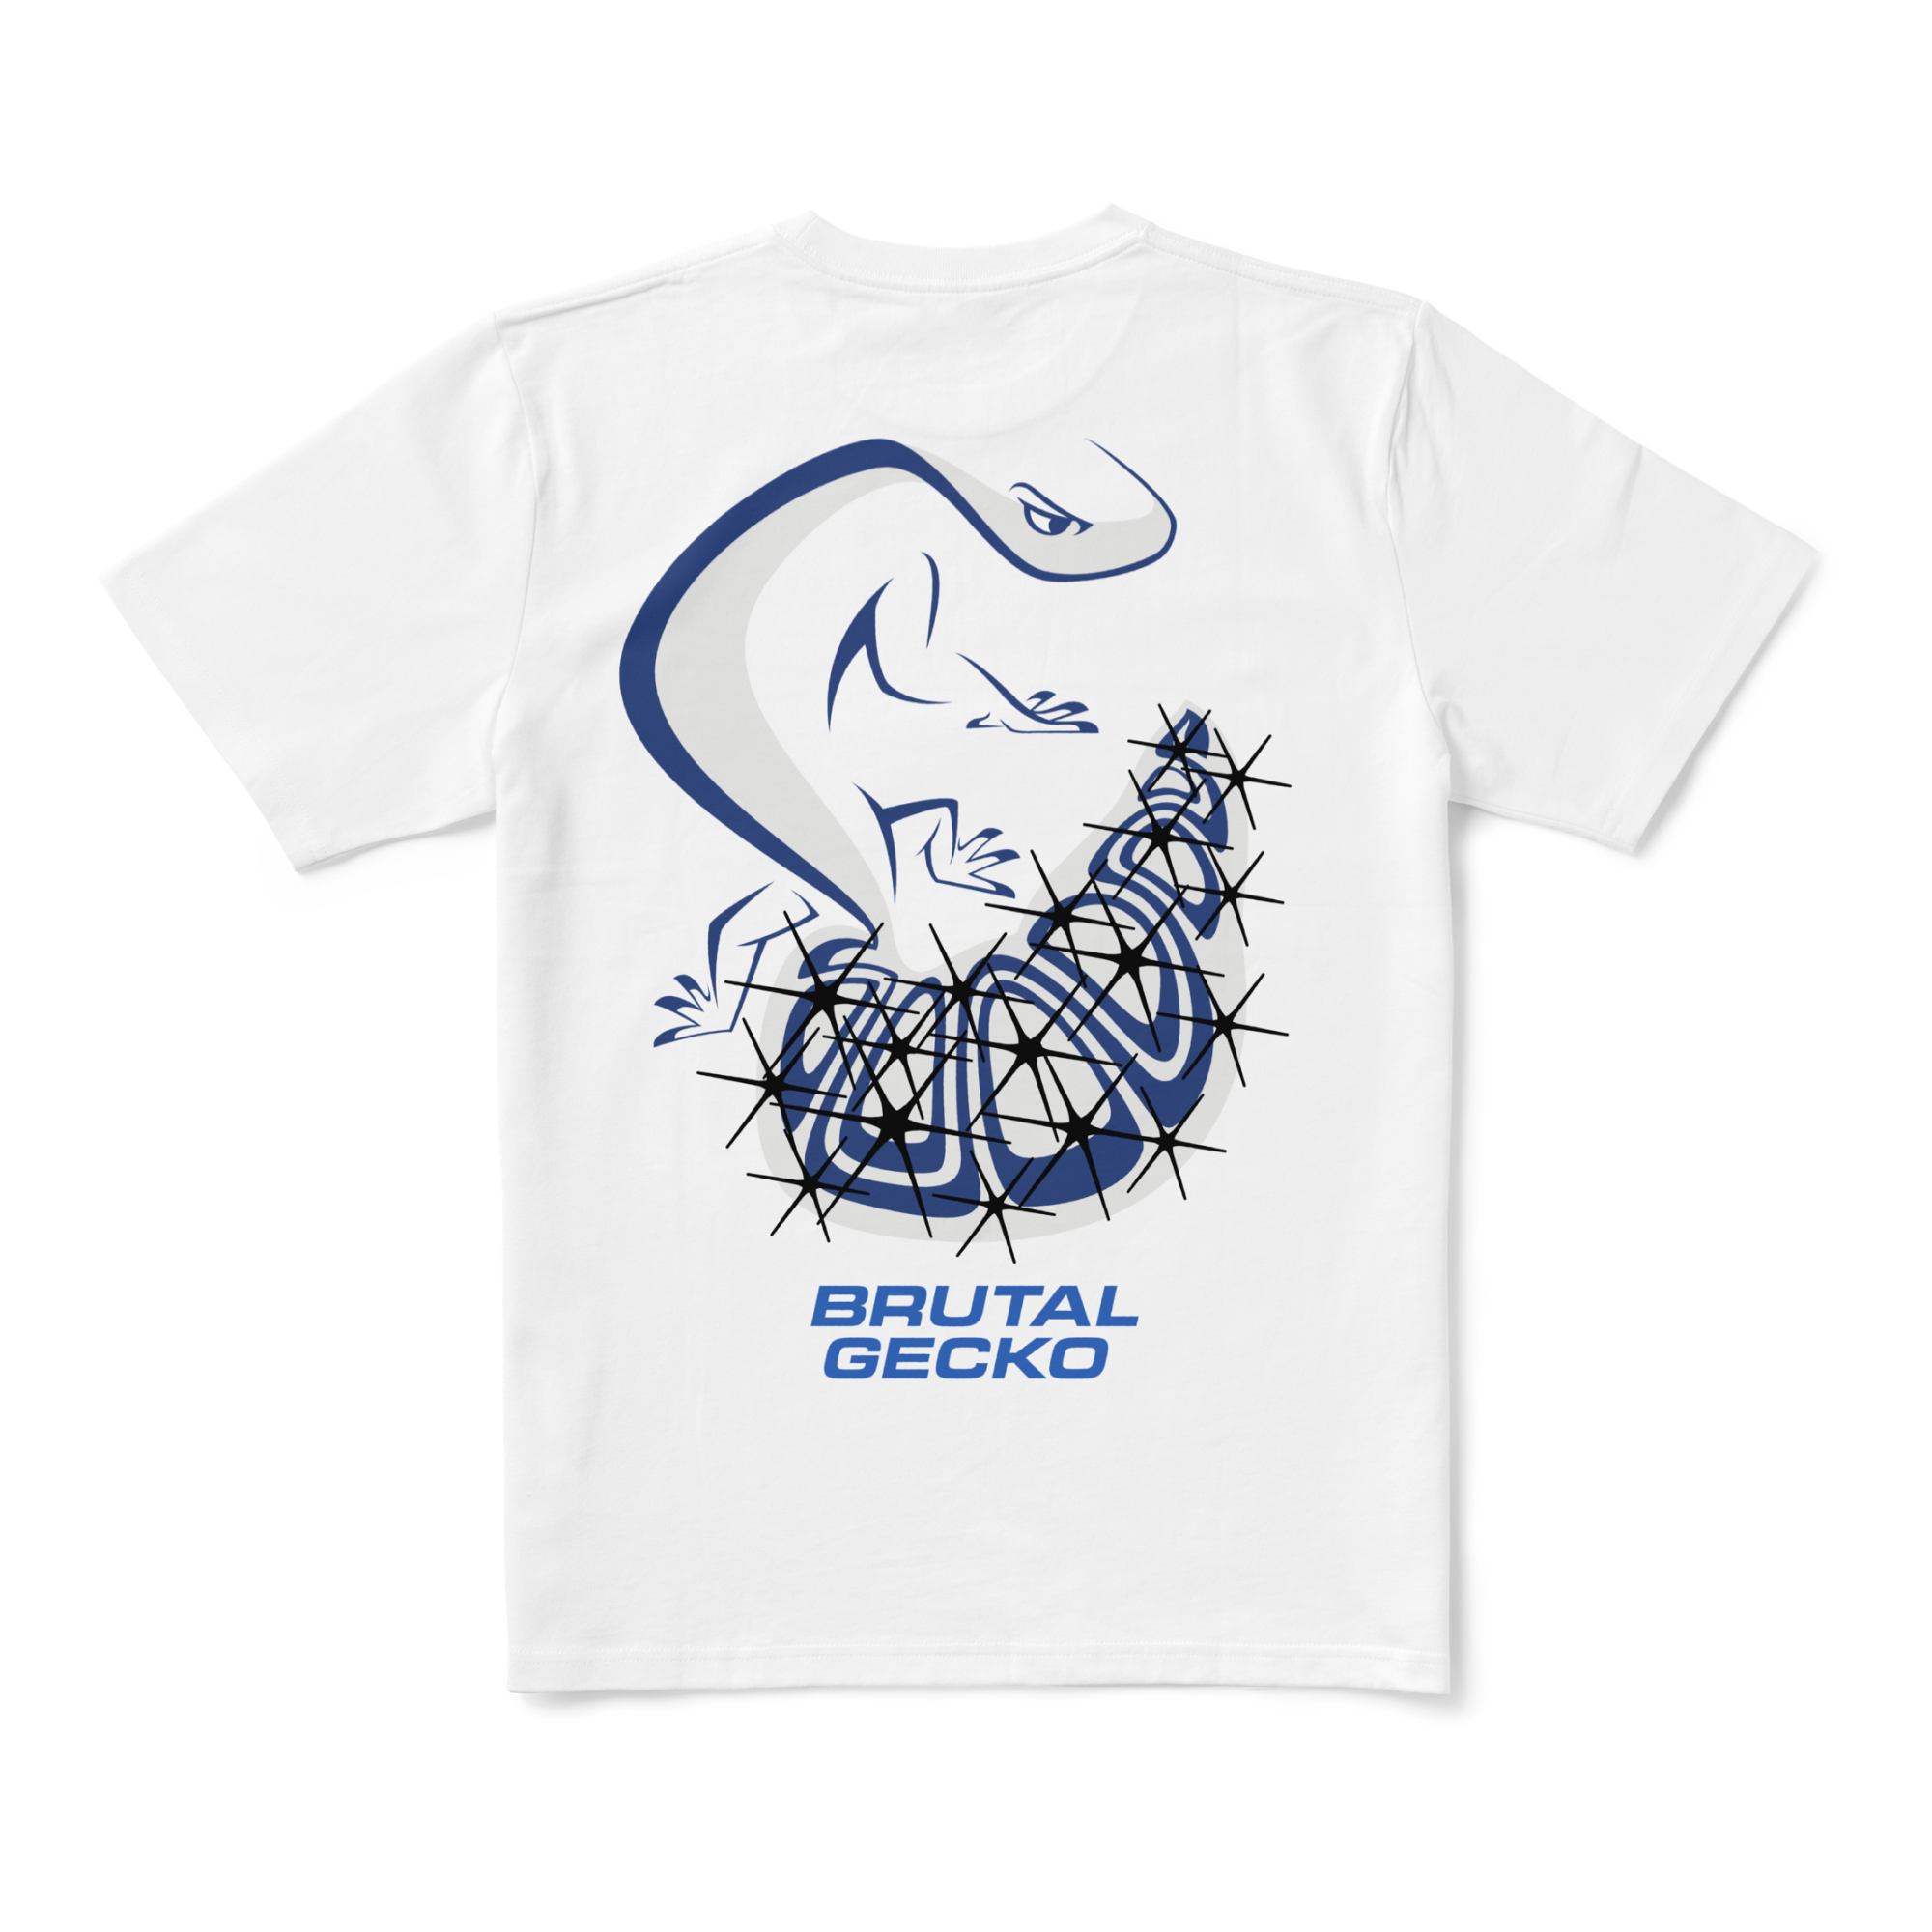 Brutal Gecko - First Survivor White T-shirt